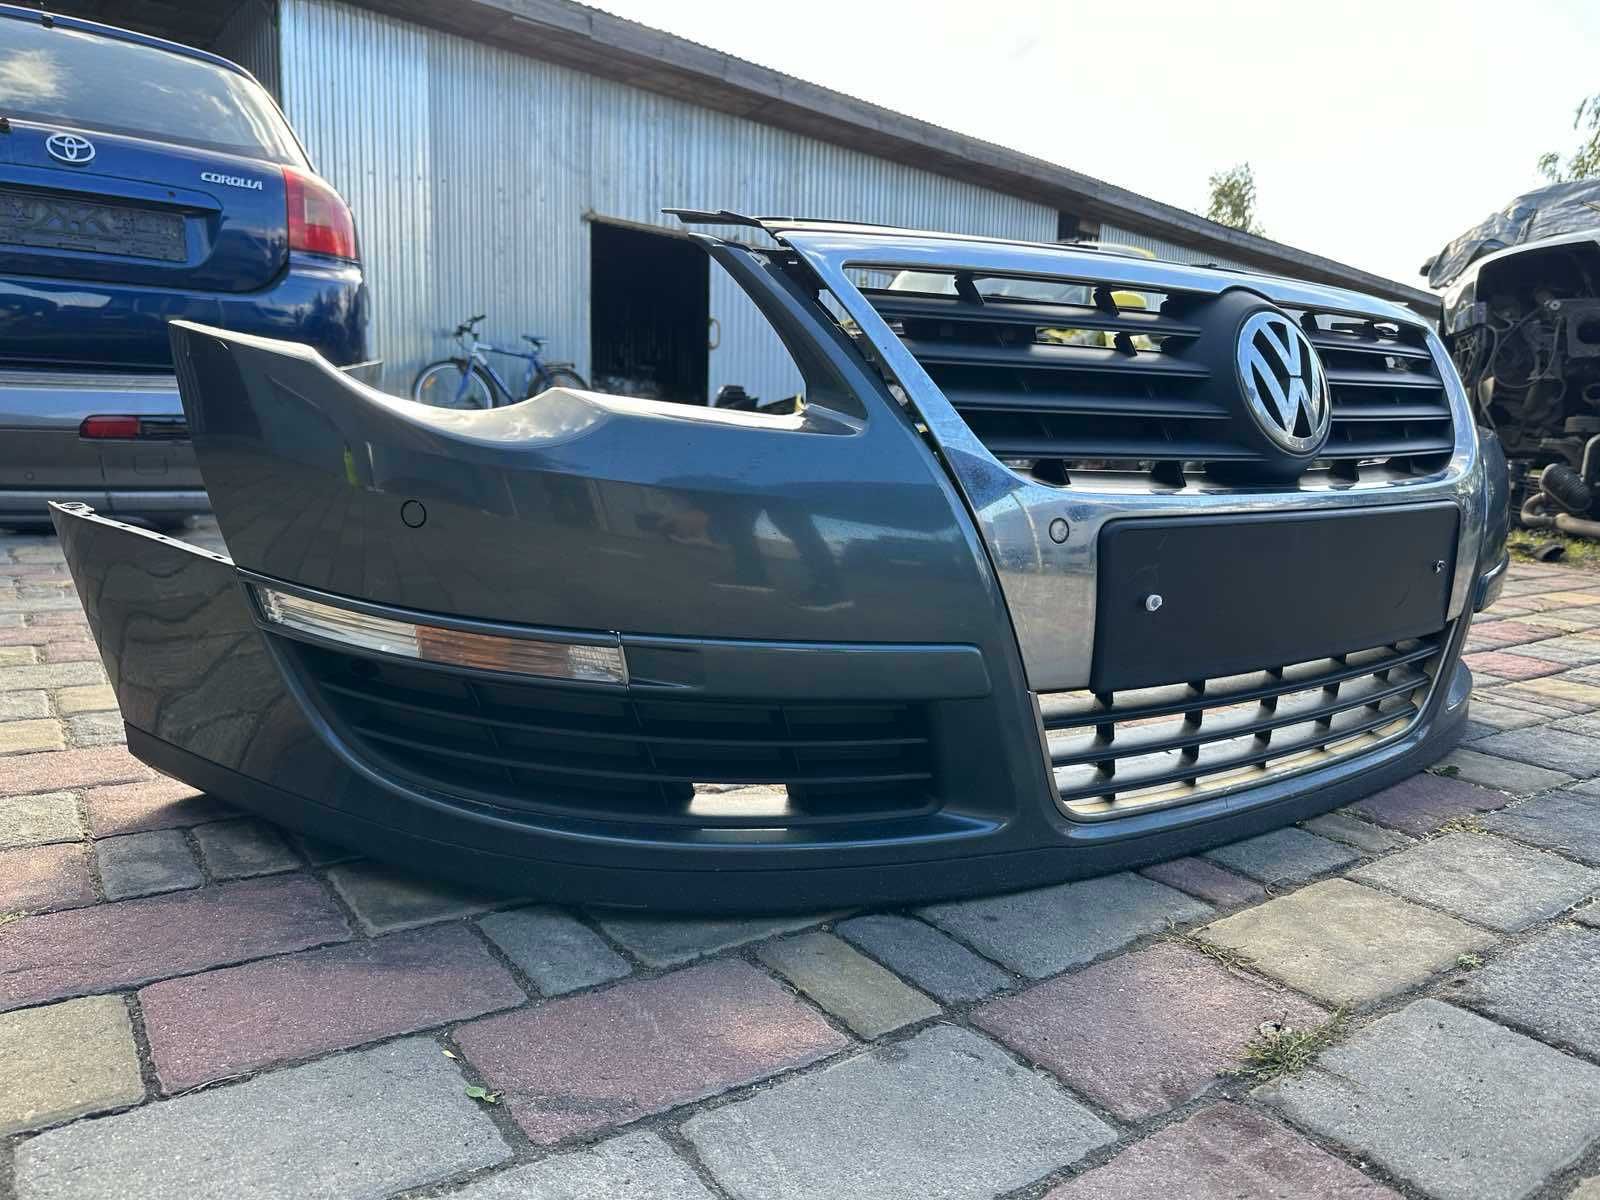 Бампер VW Passat B6 Передний В сборе комплектный В наличии